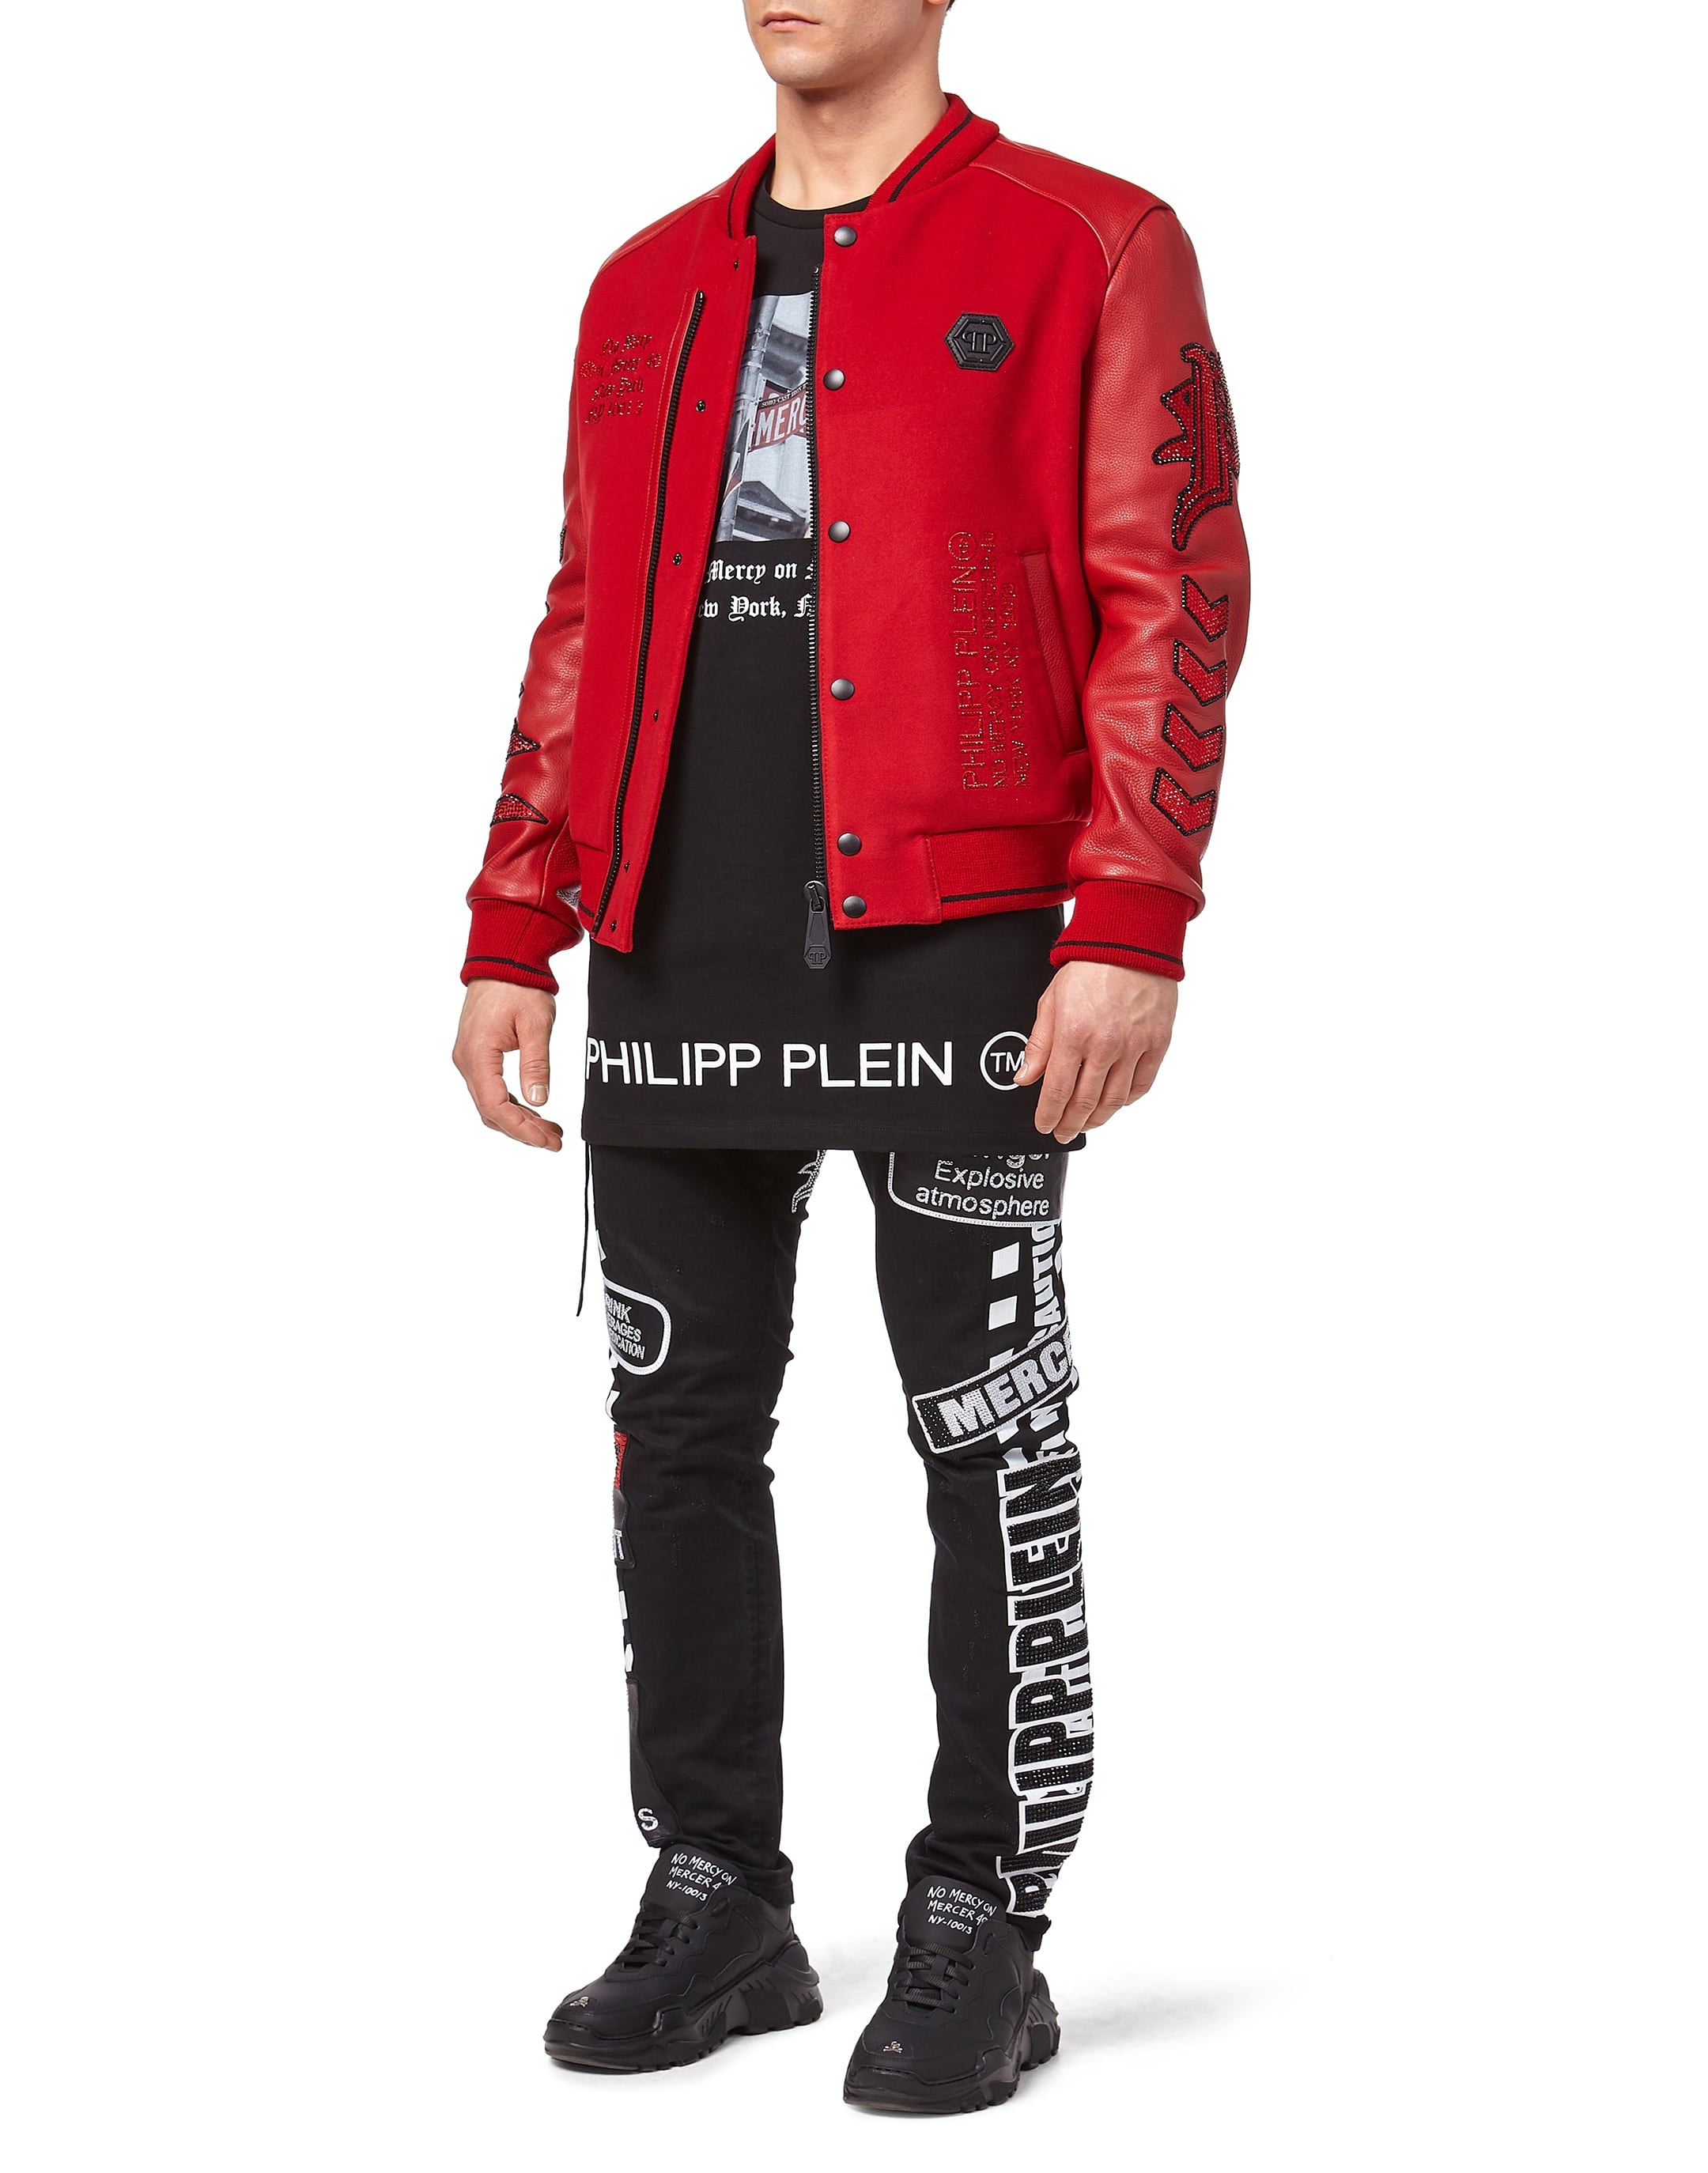 philipp plein red jacket